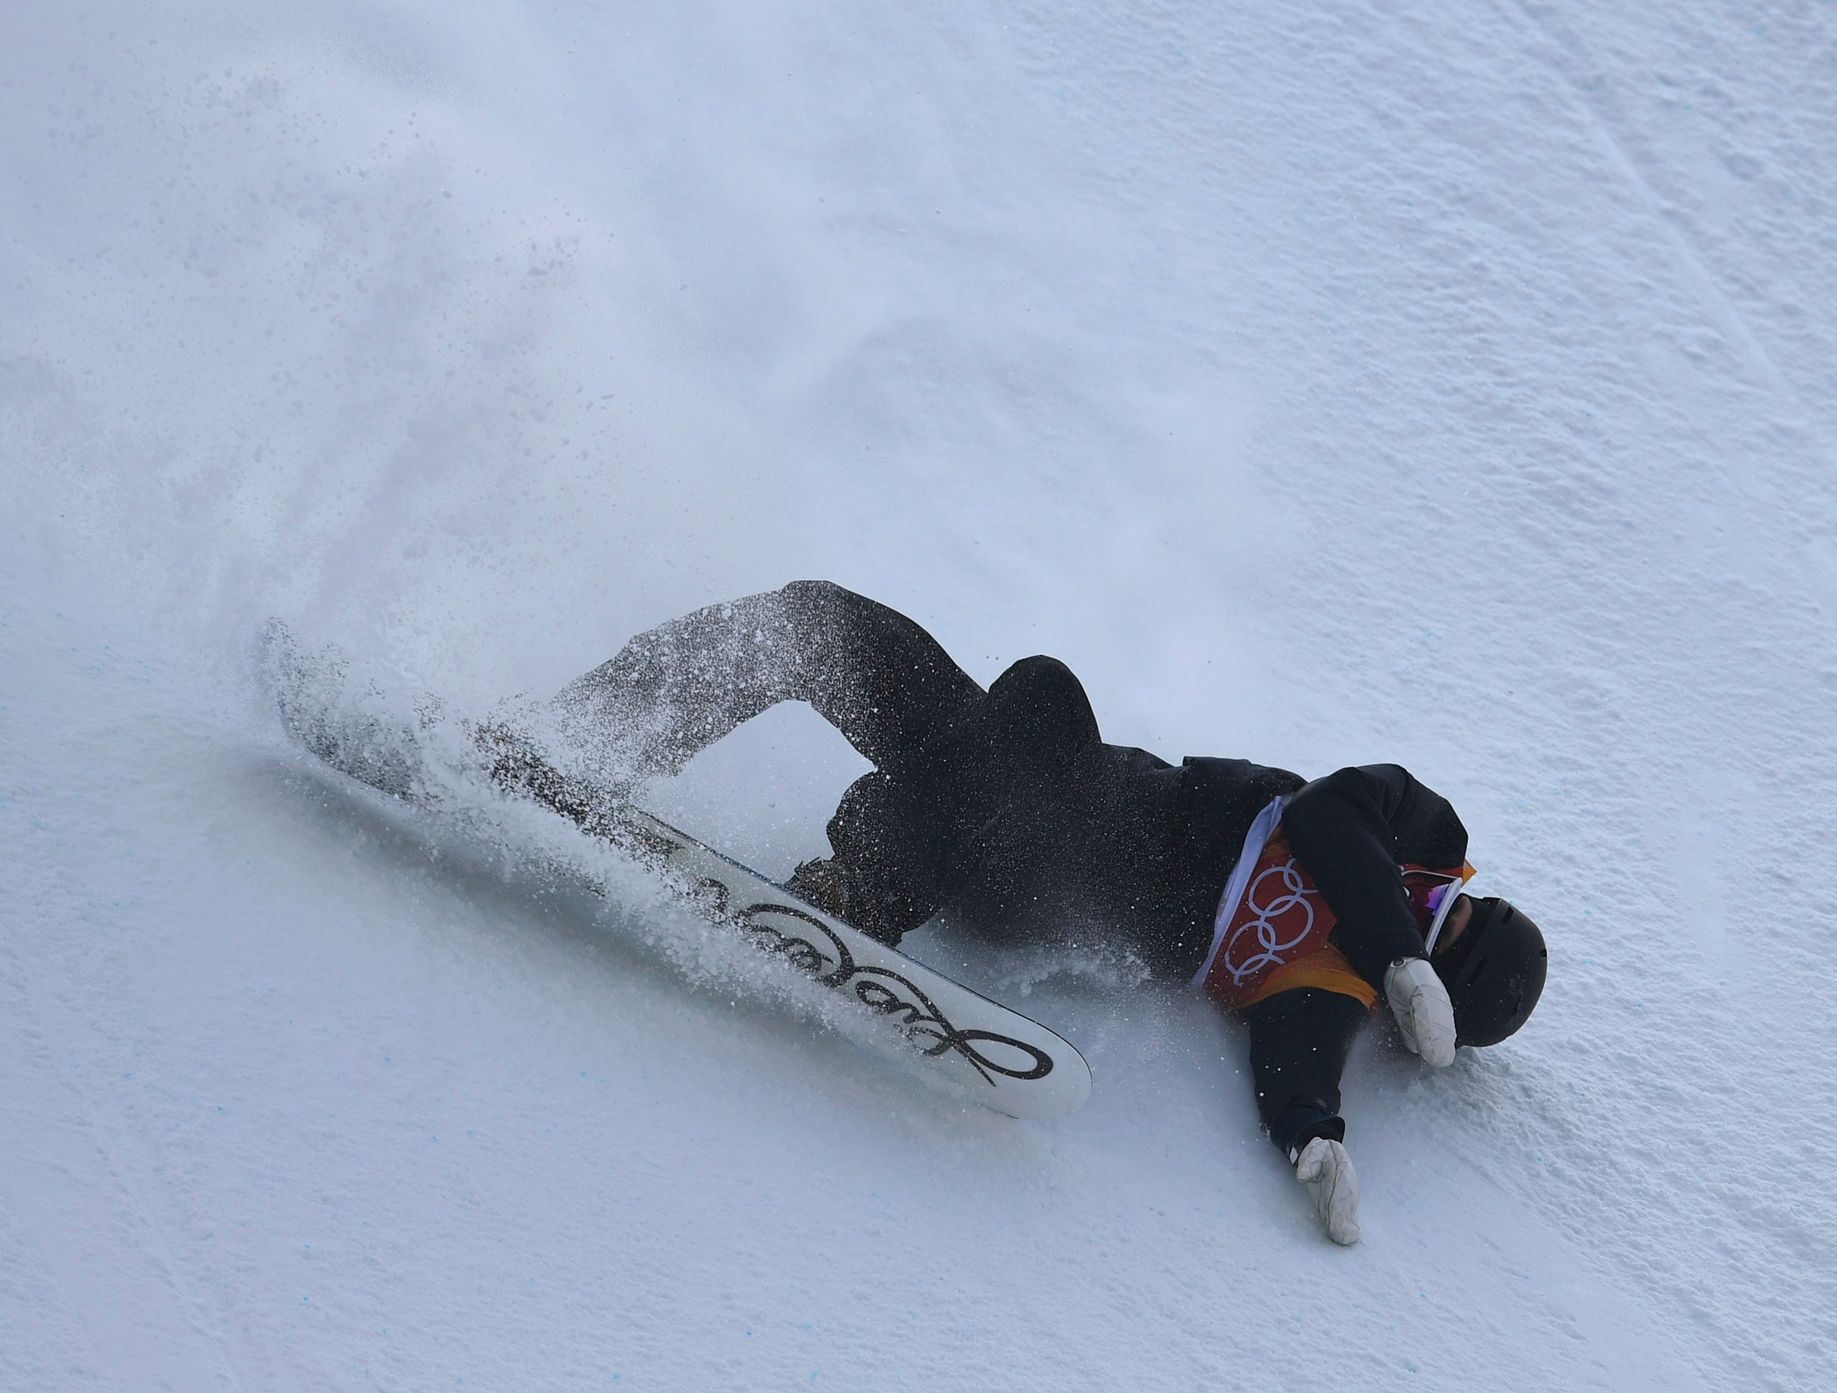 Pády snowboardistů v kvalifikaci slopestylu: Švéd Mans Hedberg